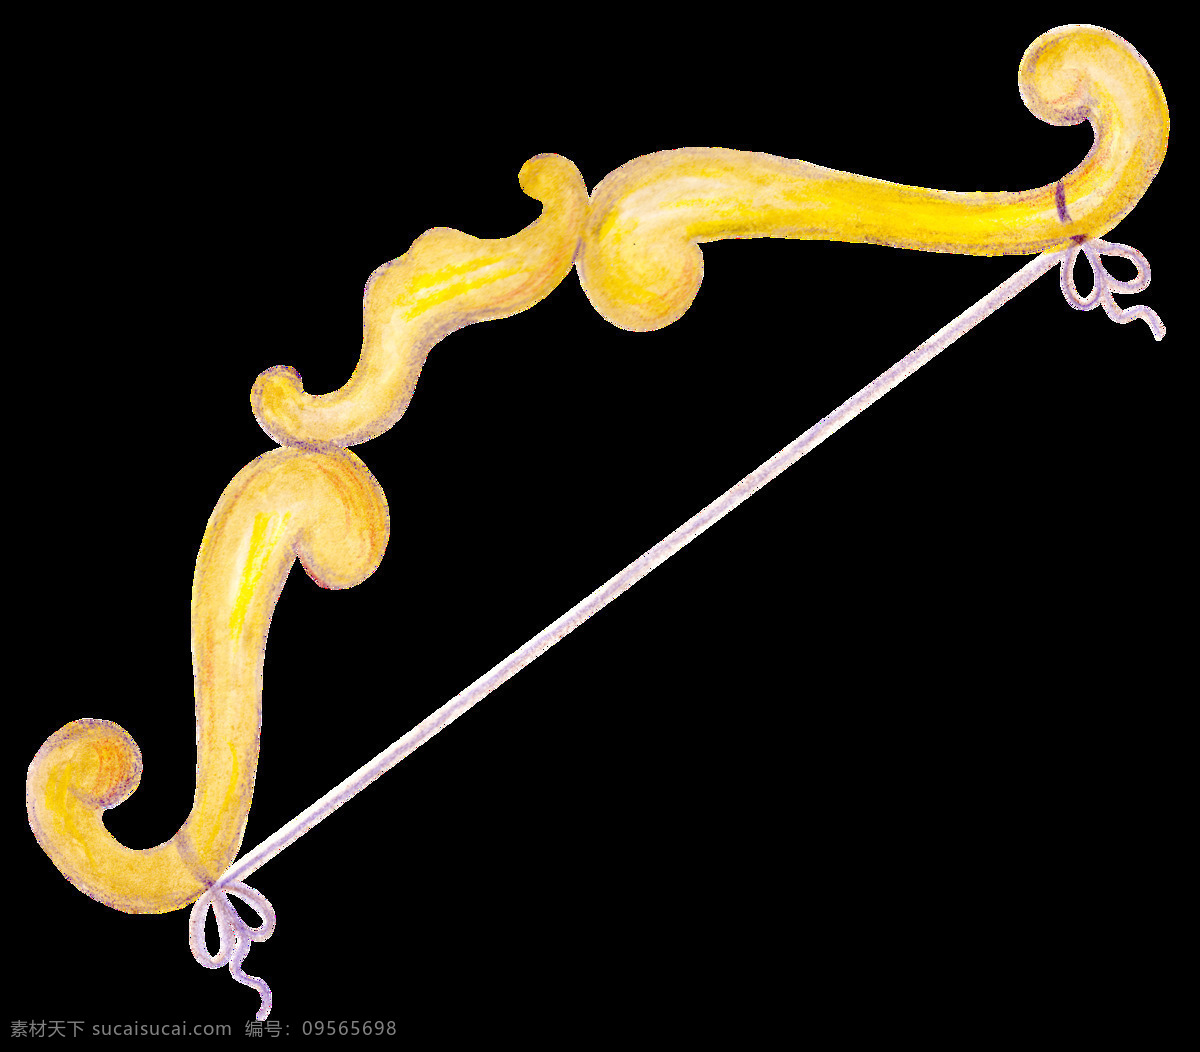 黄色 弓箭 透明 装饰 图案 设计素材 png元素